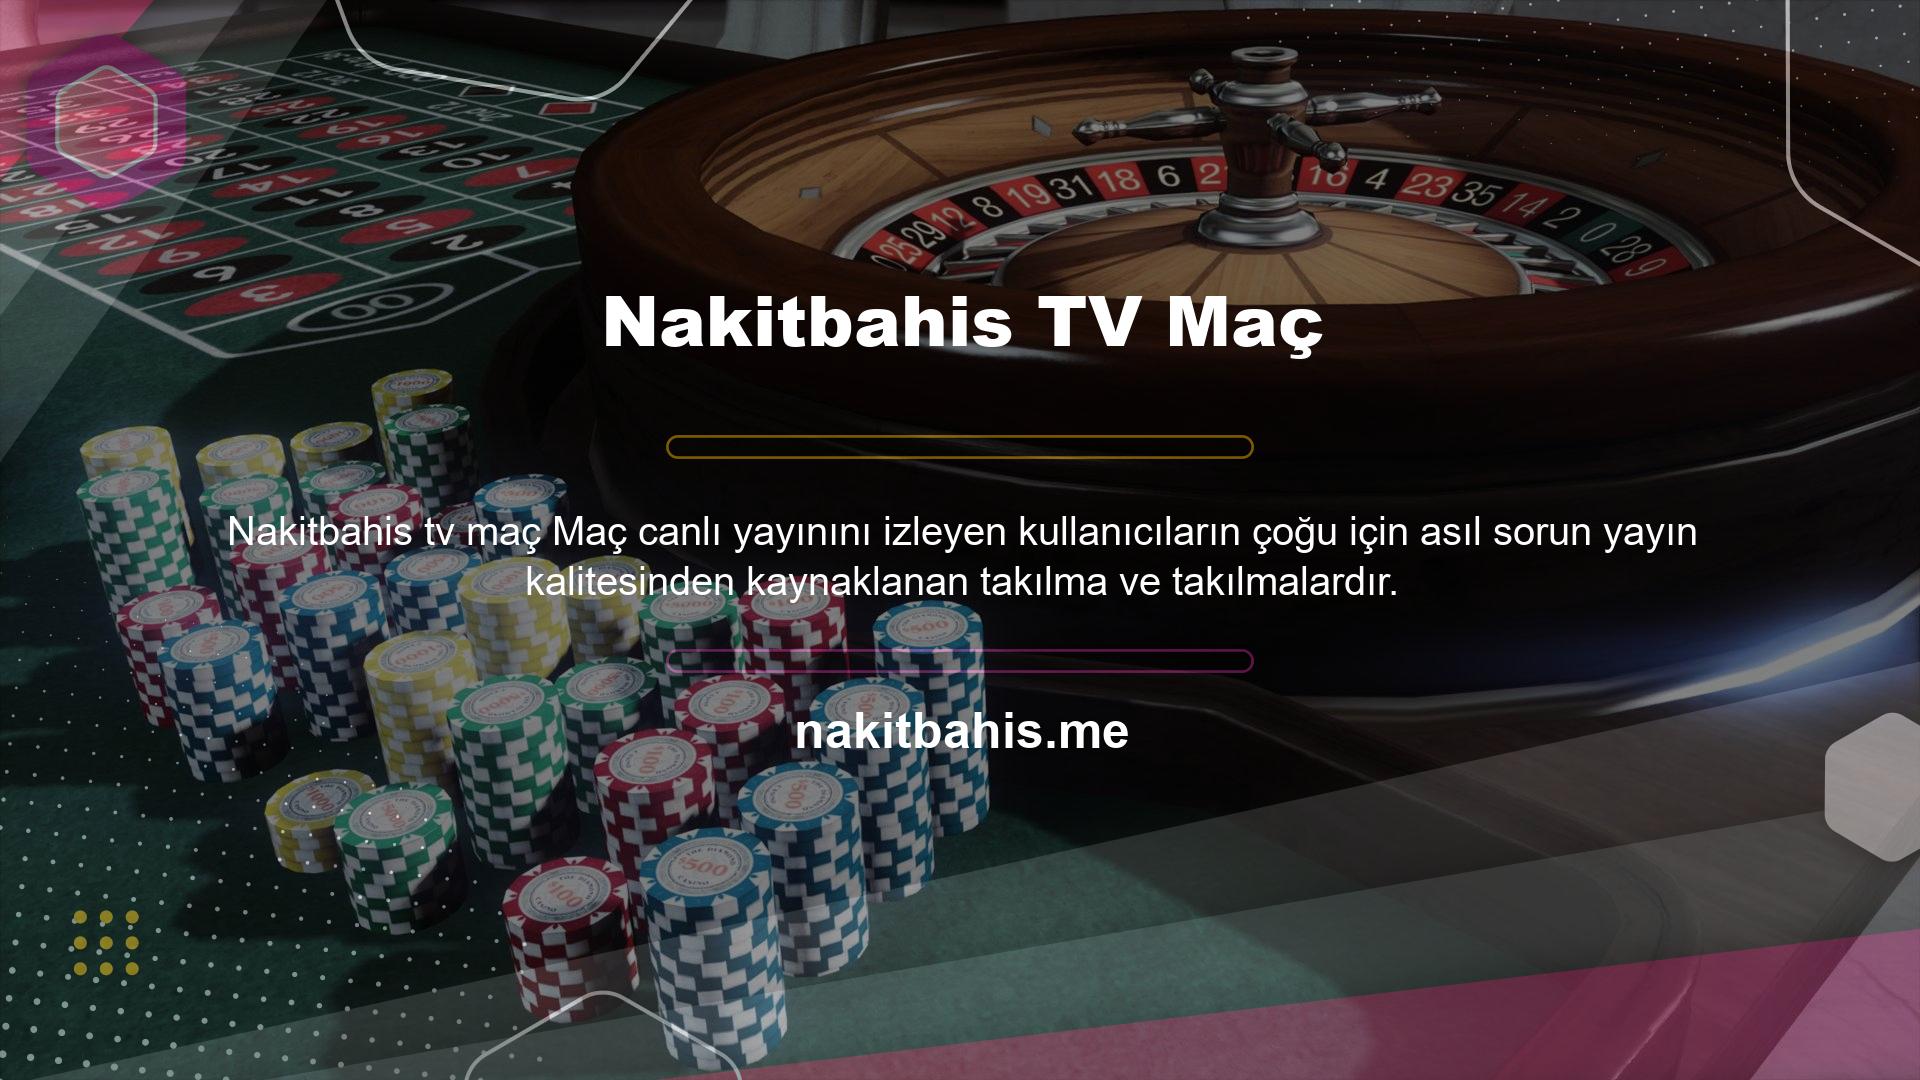 Artık derbi maçlarını Nakitbahis TV Maç URL'si üzerinden kolayca izleyebileceksiniz